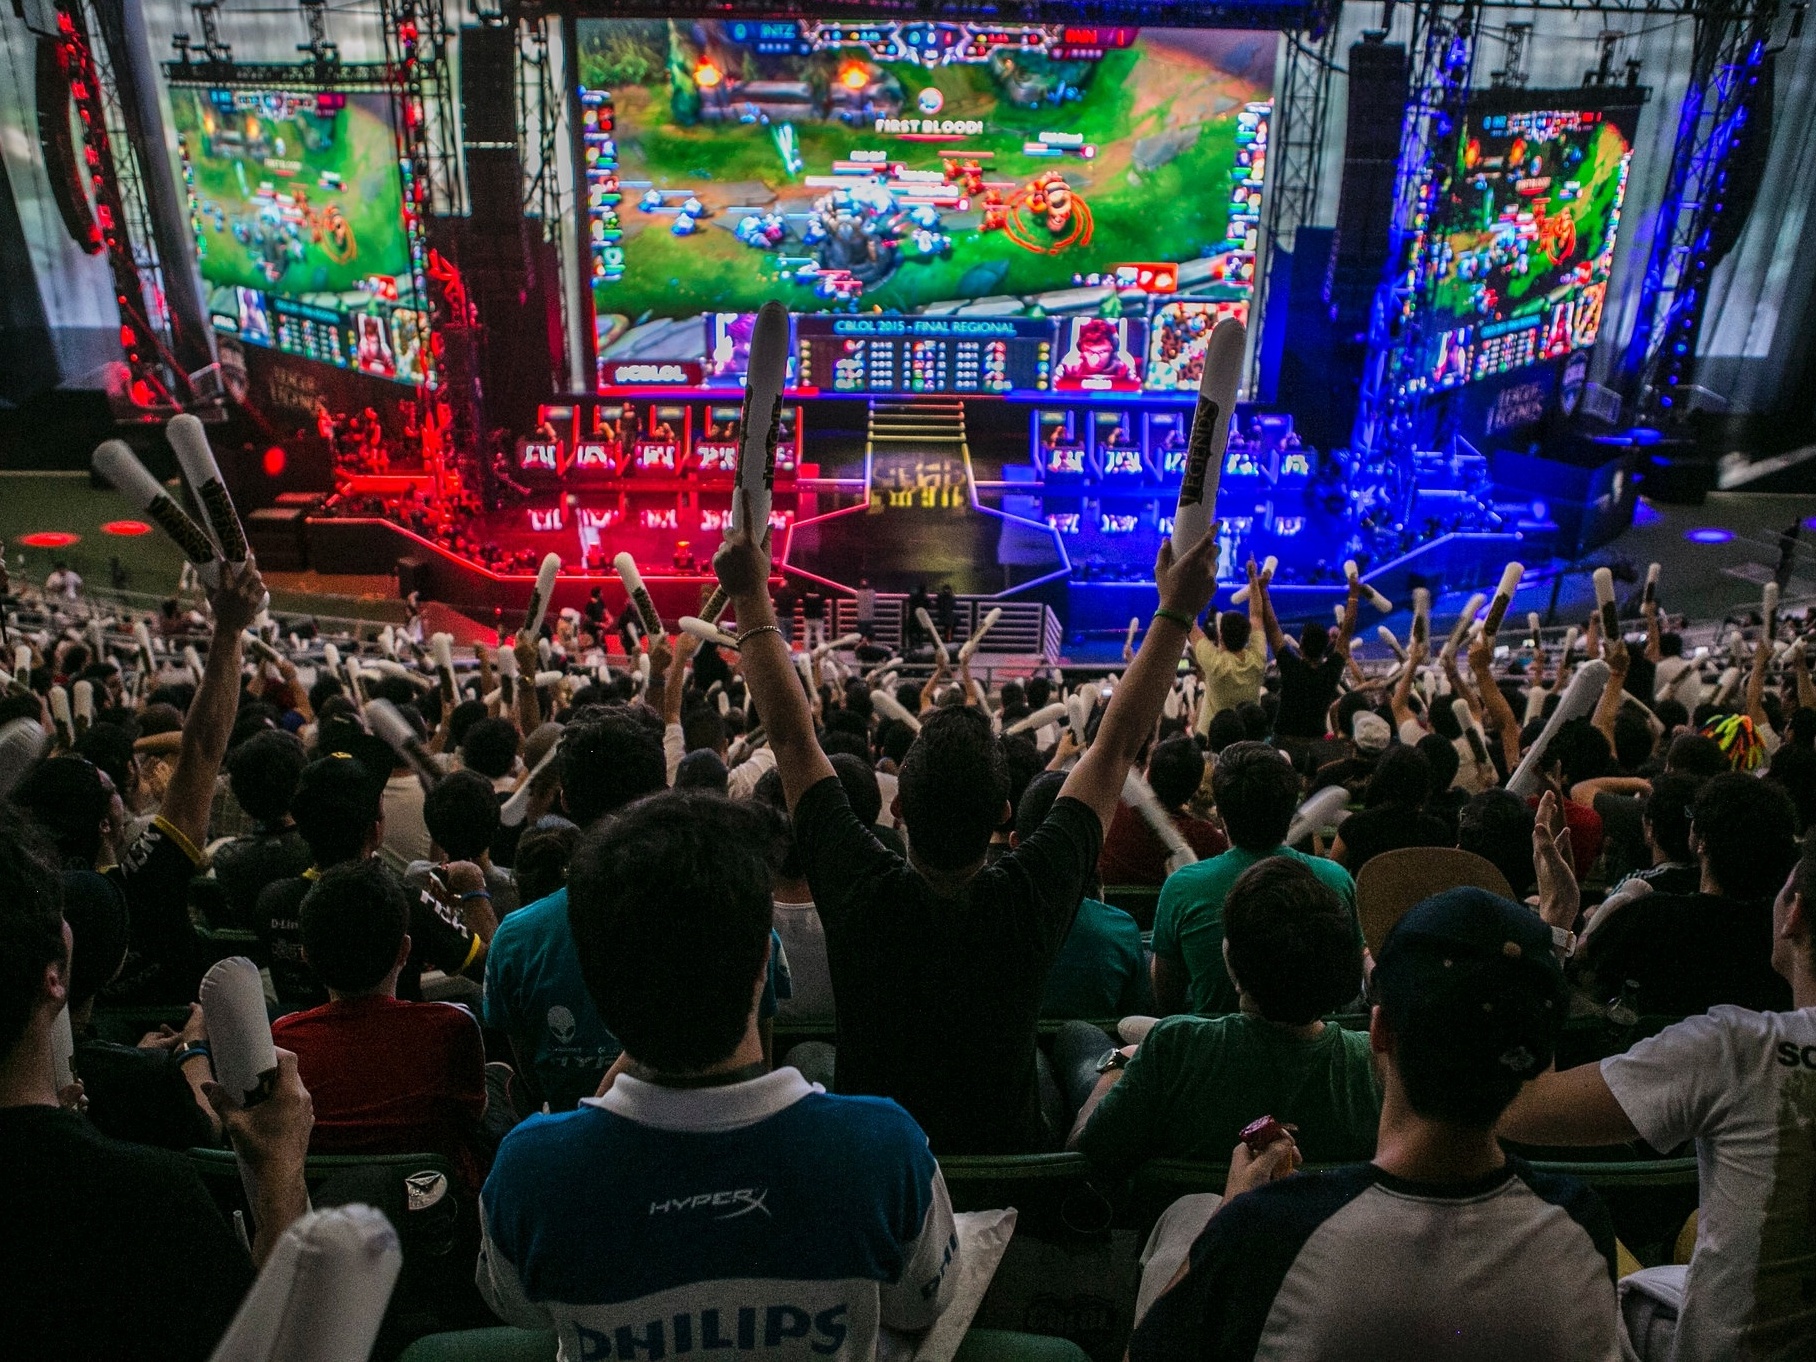 CentroSul sedia final da 1ª Etapa do Brasileiro de 'League of Legends' 2015  - Estrutura de Comunicação